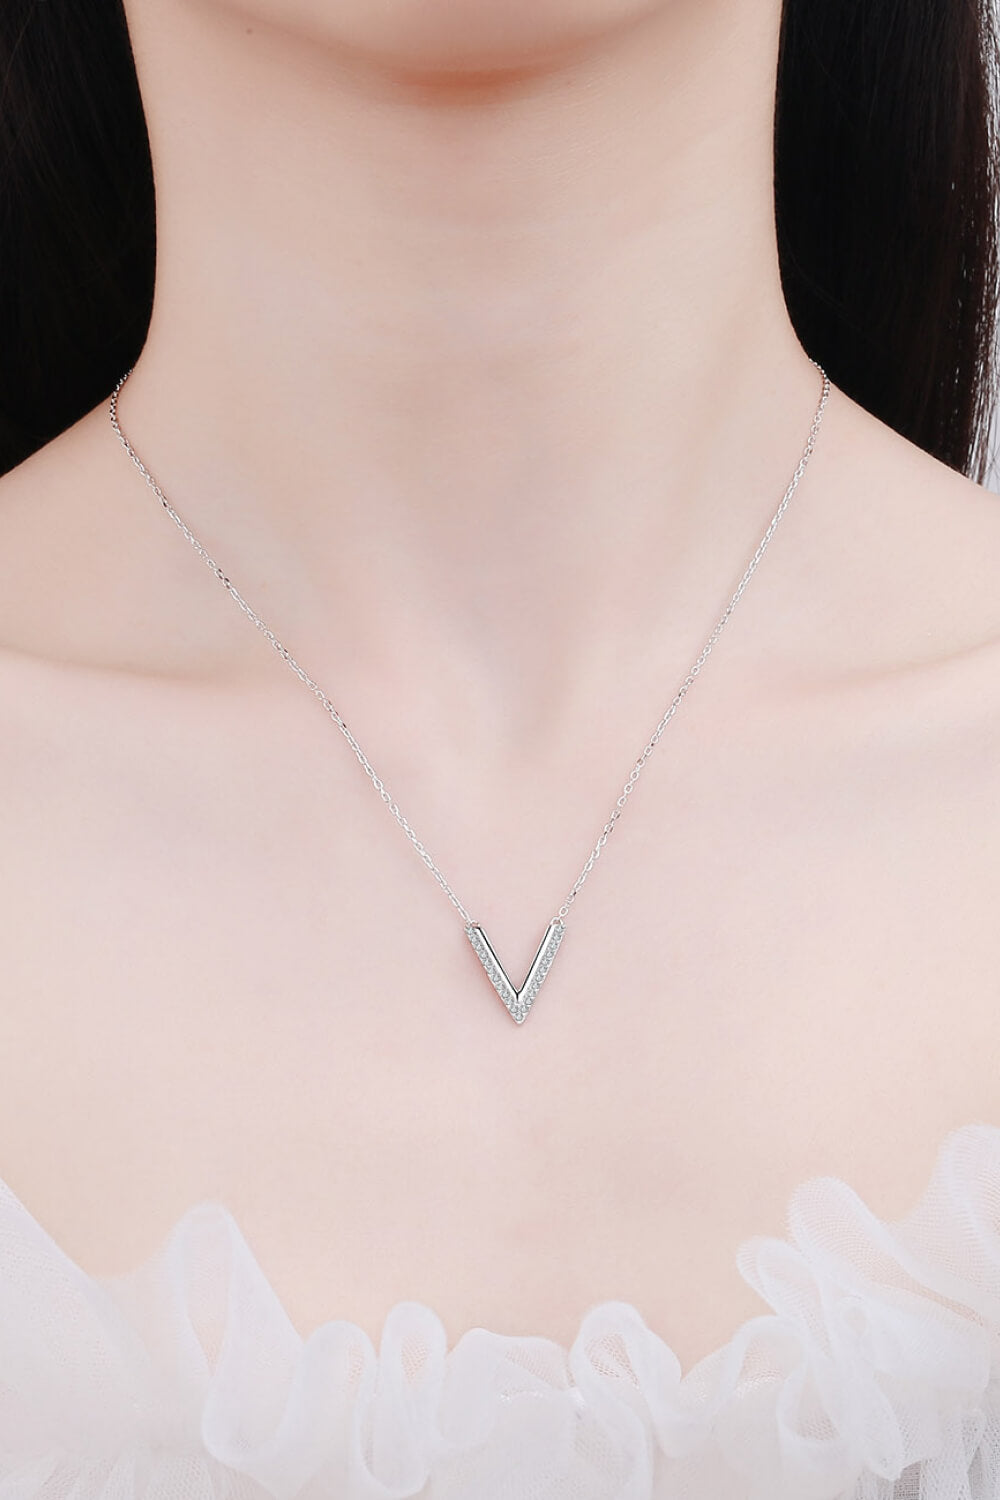 Sterling Silver V Letter Pendant Necklace